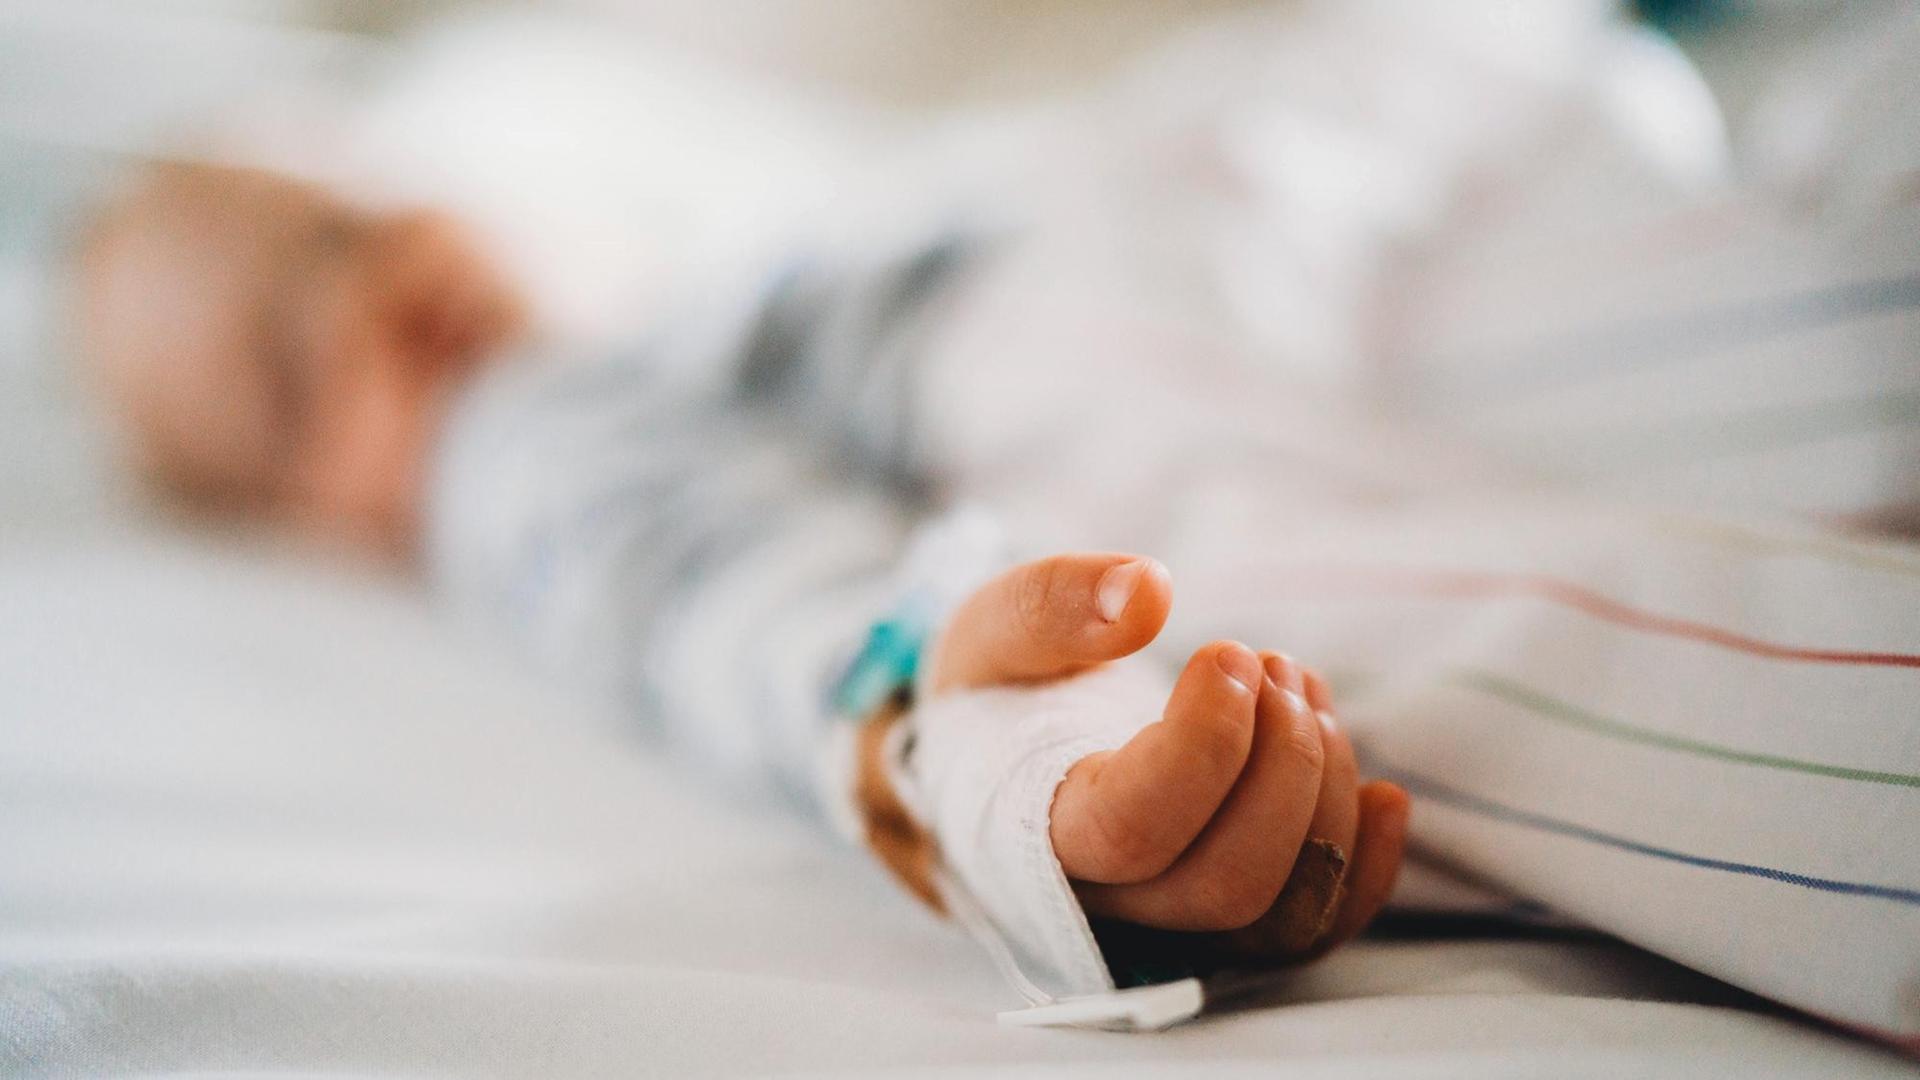 Aufnahme eines Kindes im Krankenhausbett, die Schärfe liegt auf der Hand des Kindes.